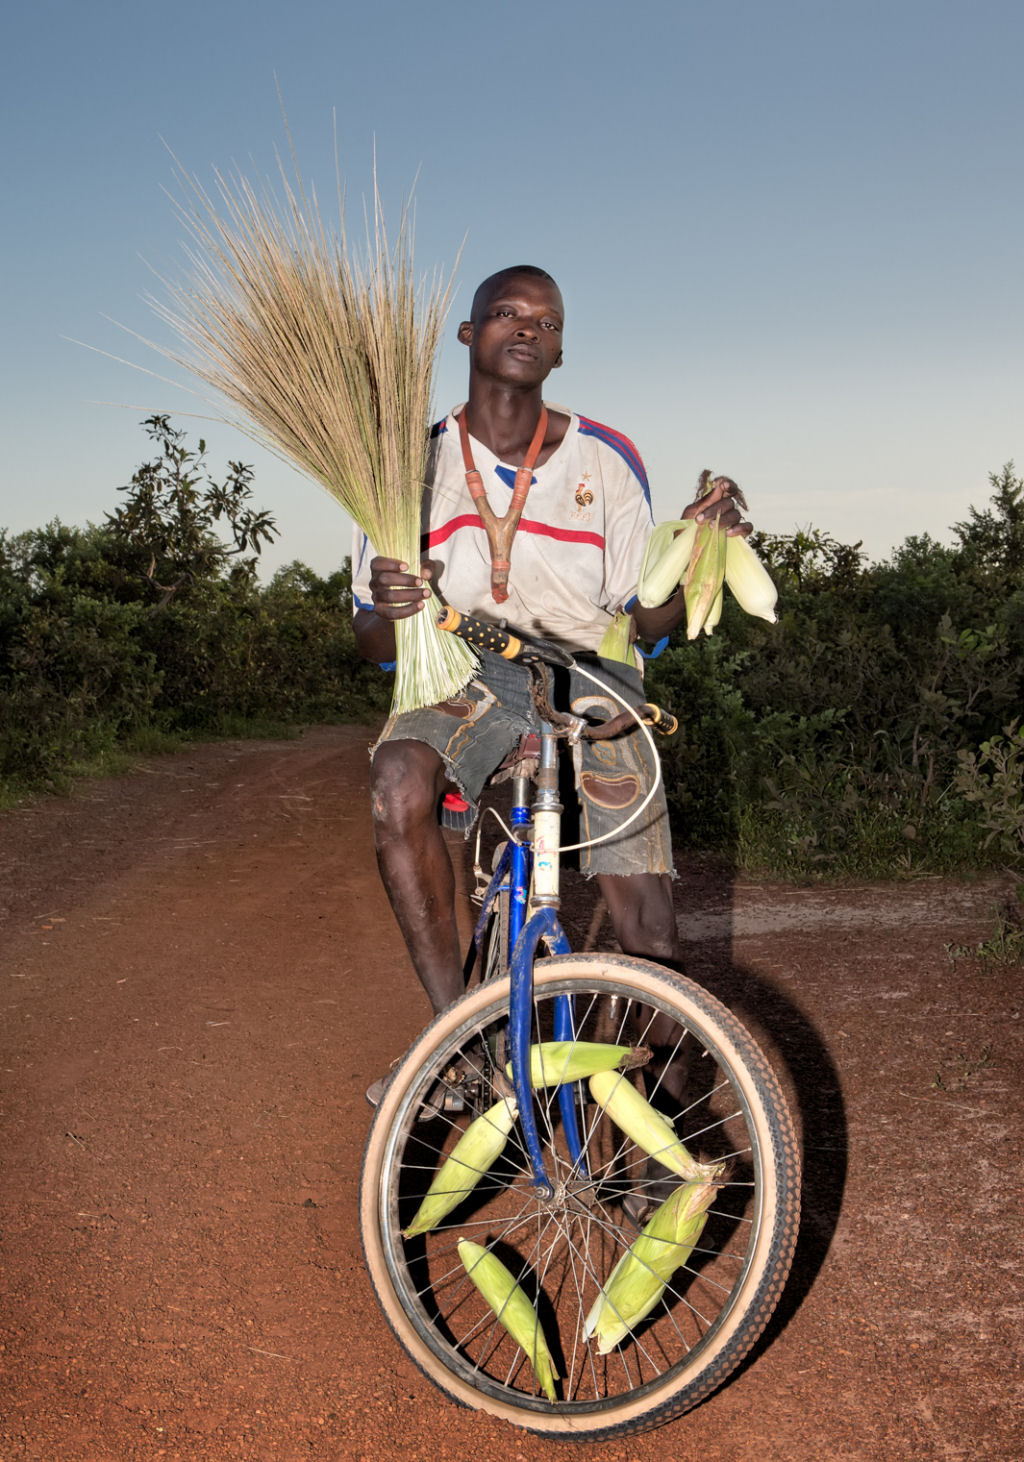 As pessoas que cruzam uma estradinha de uma vila rural africana 05